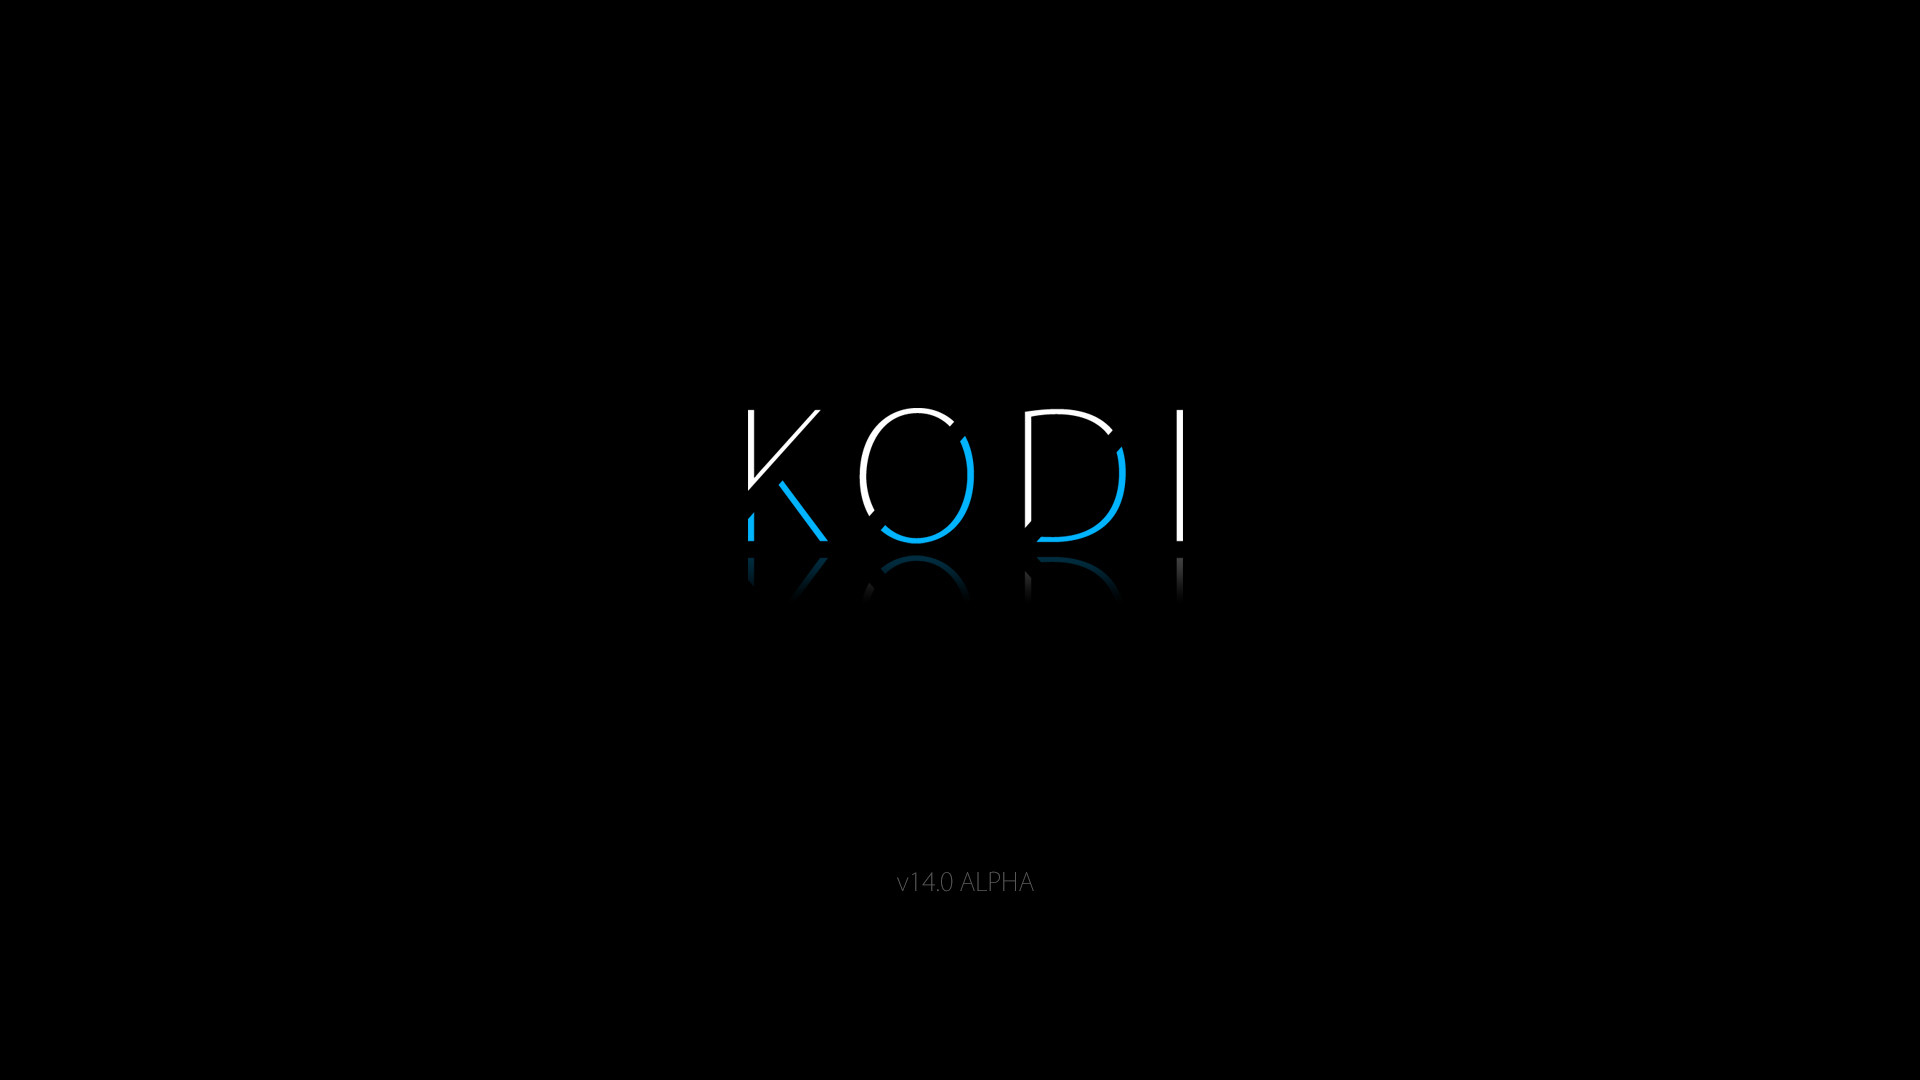 1920x1080 Kodi logo suggestions and ideas 